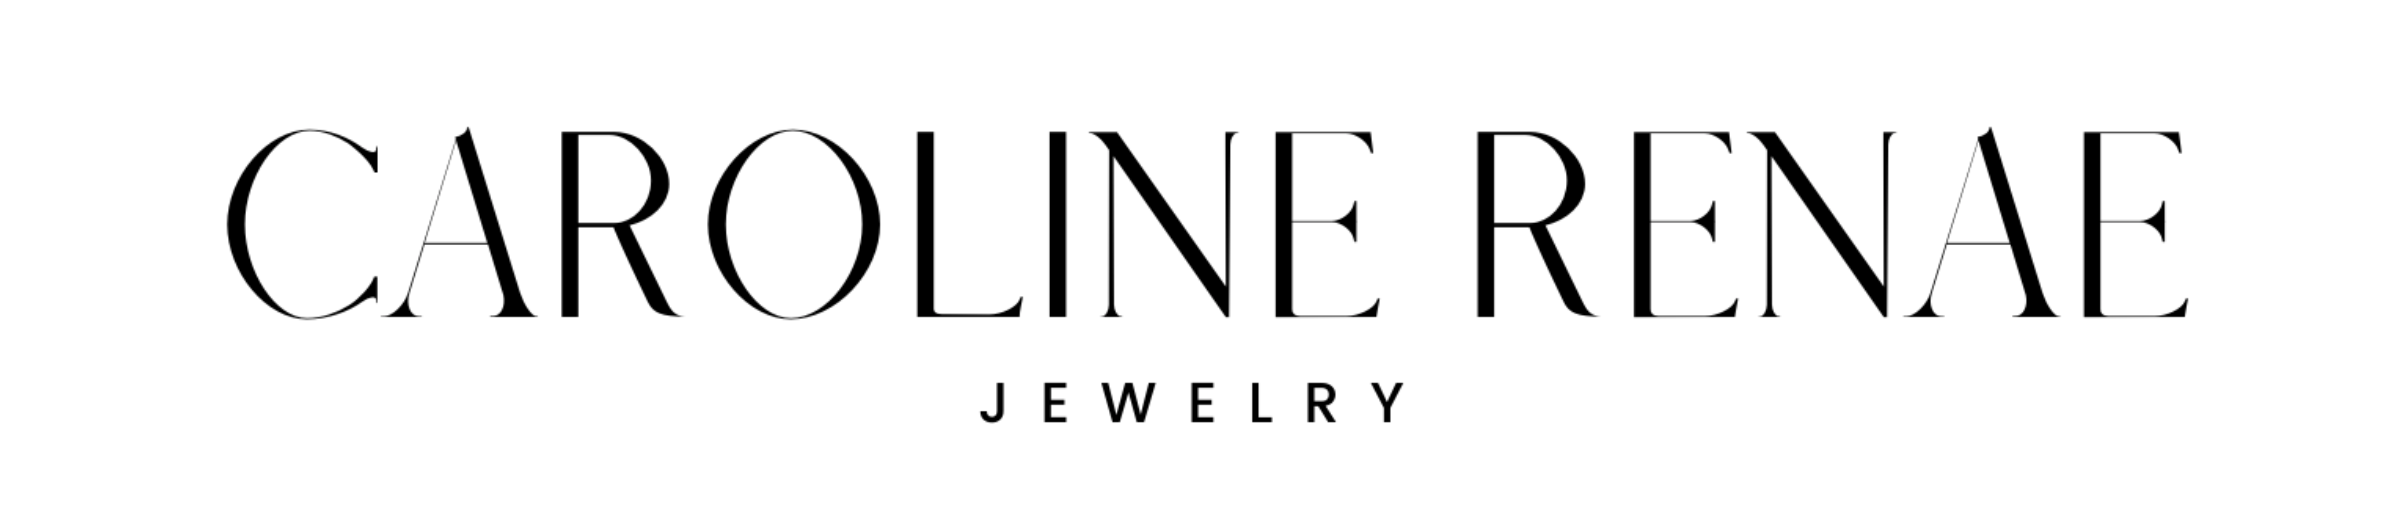 Caroline Renae Jewelry